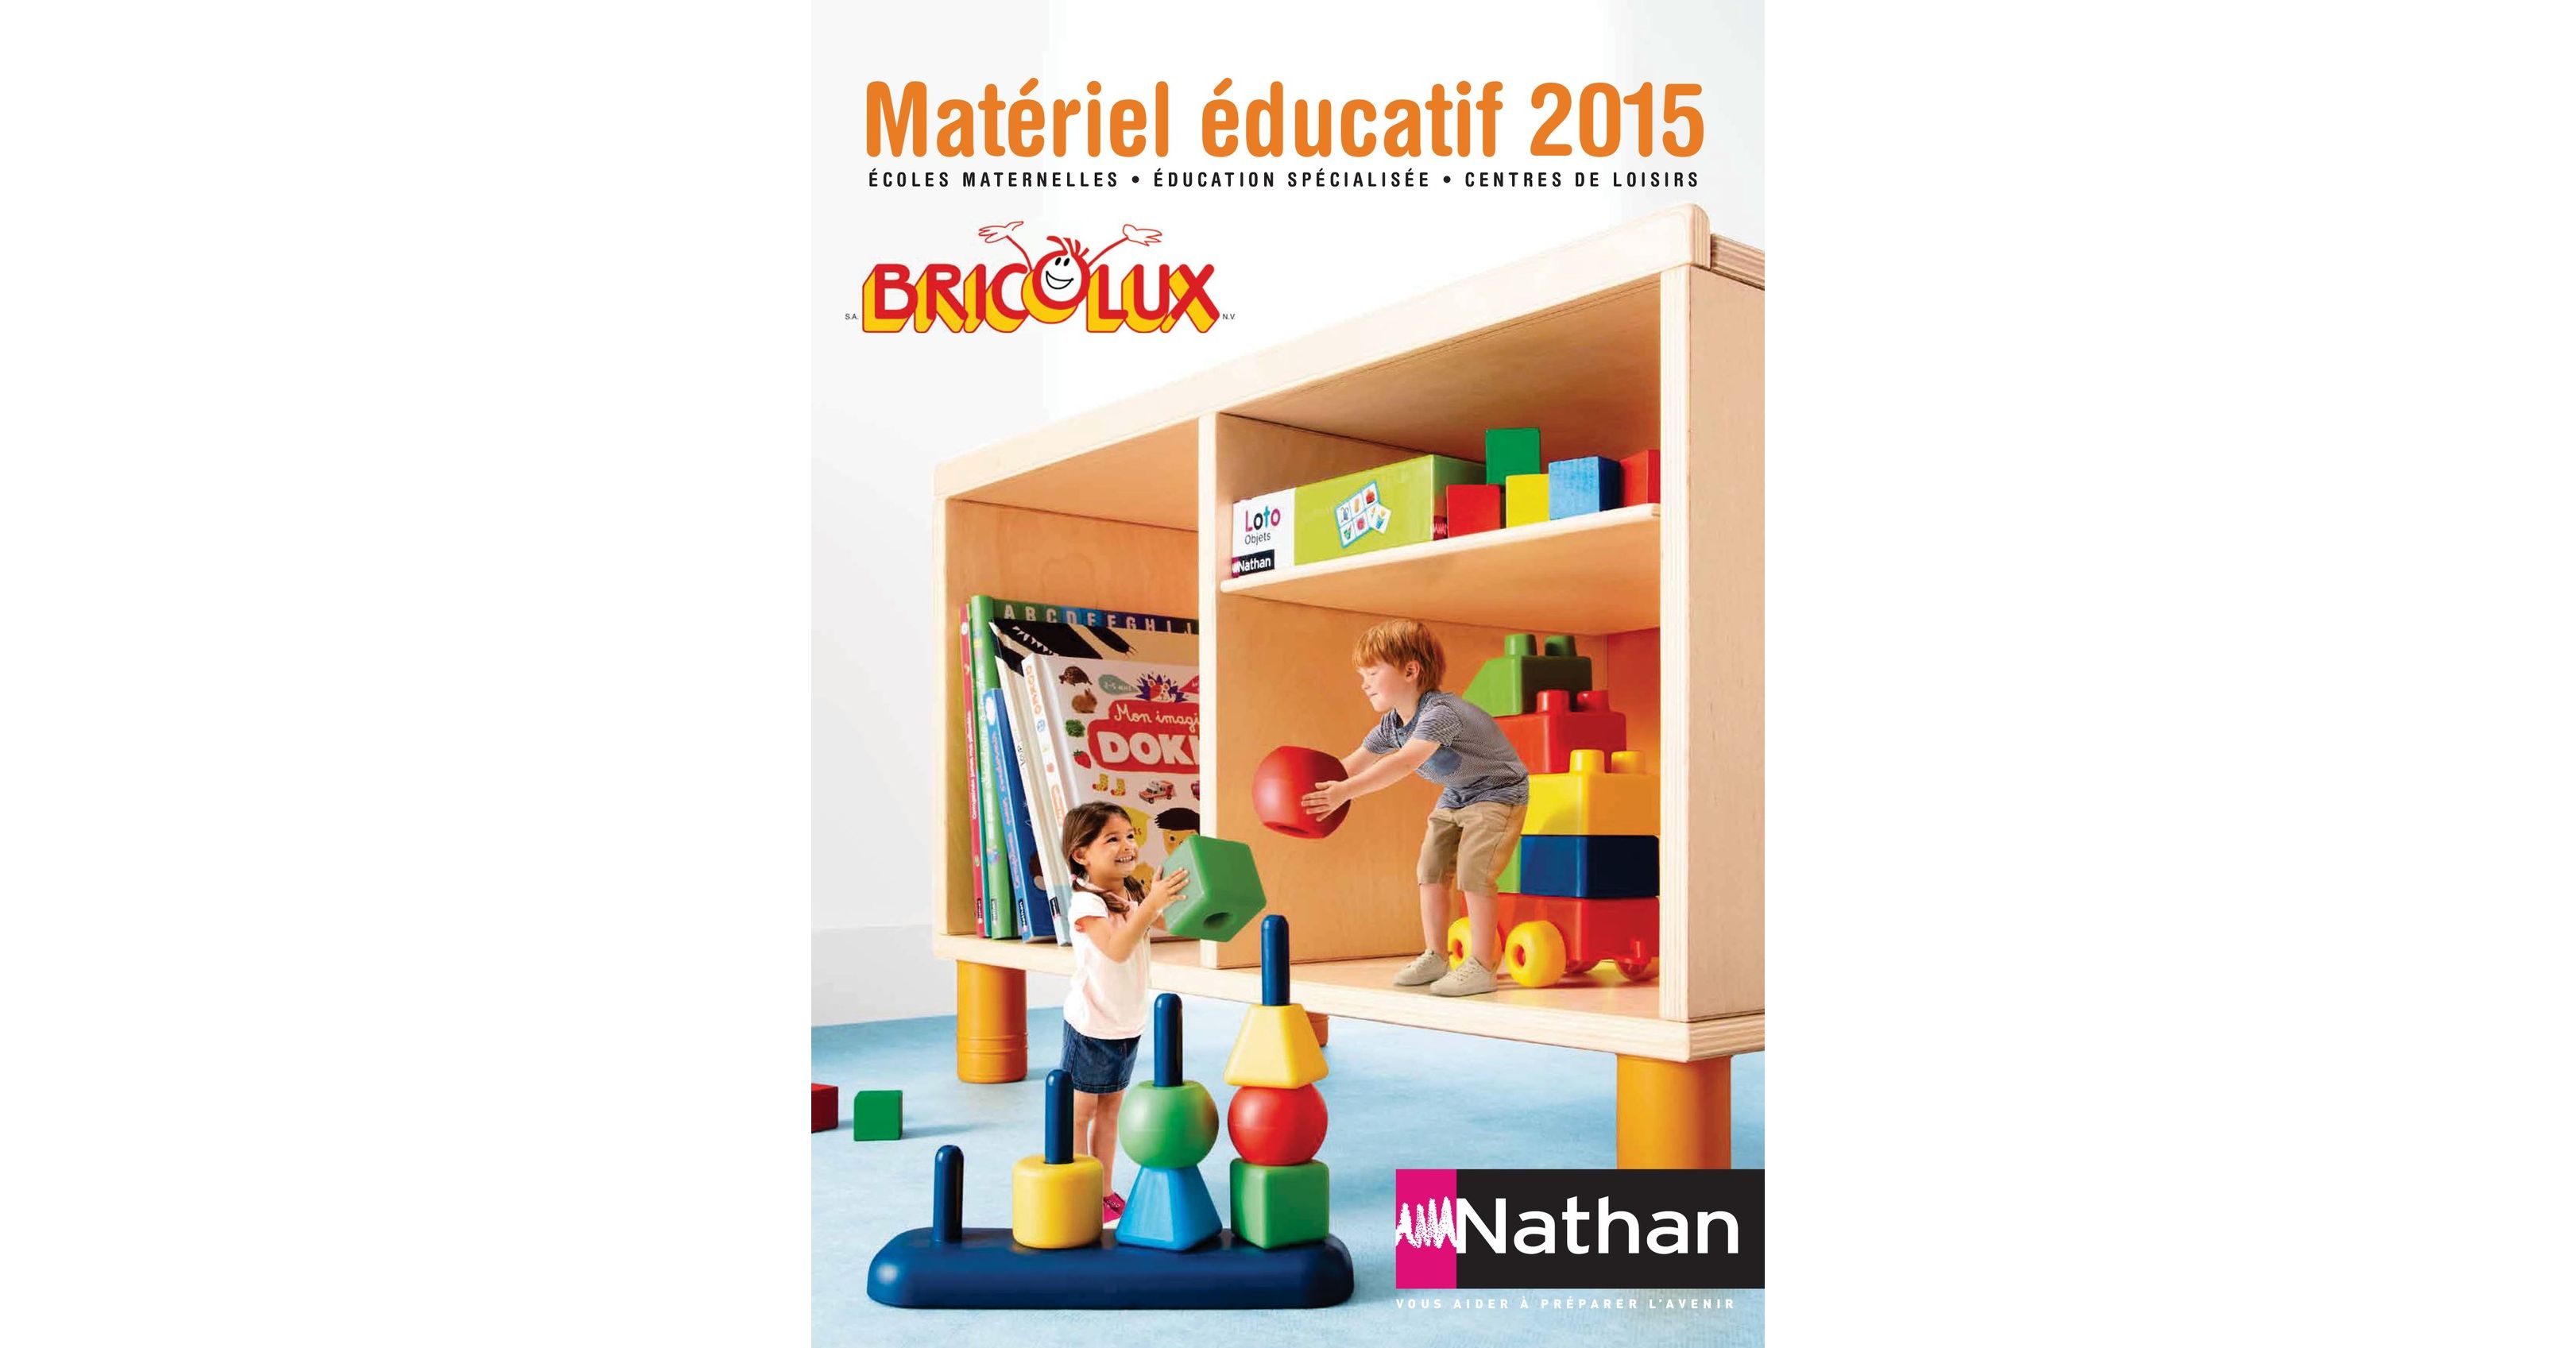 Bricolux - Matériel éducatif 2015